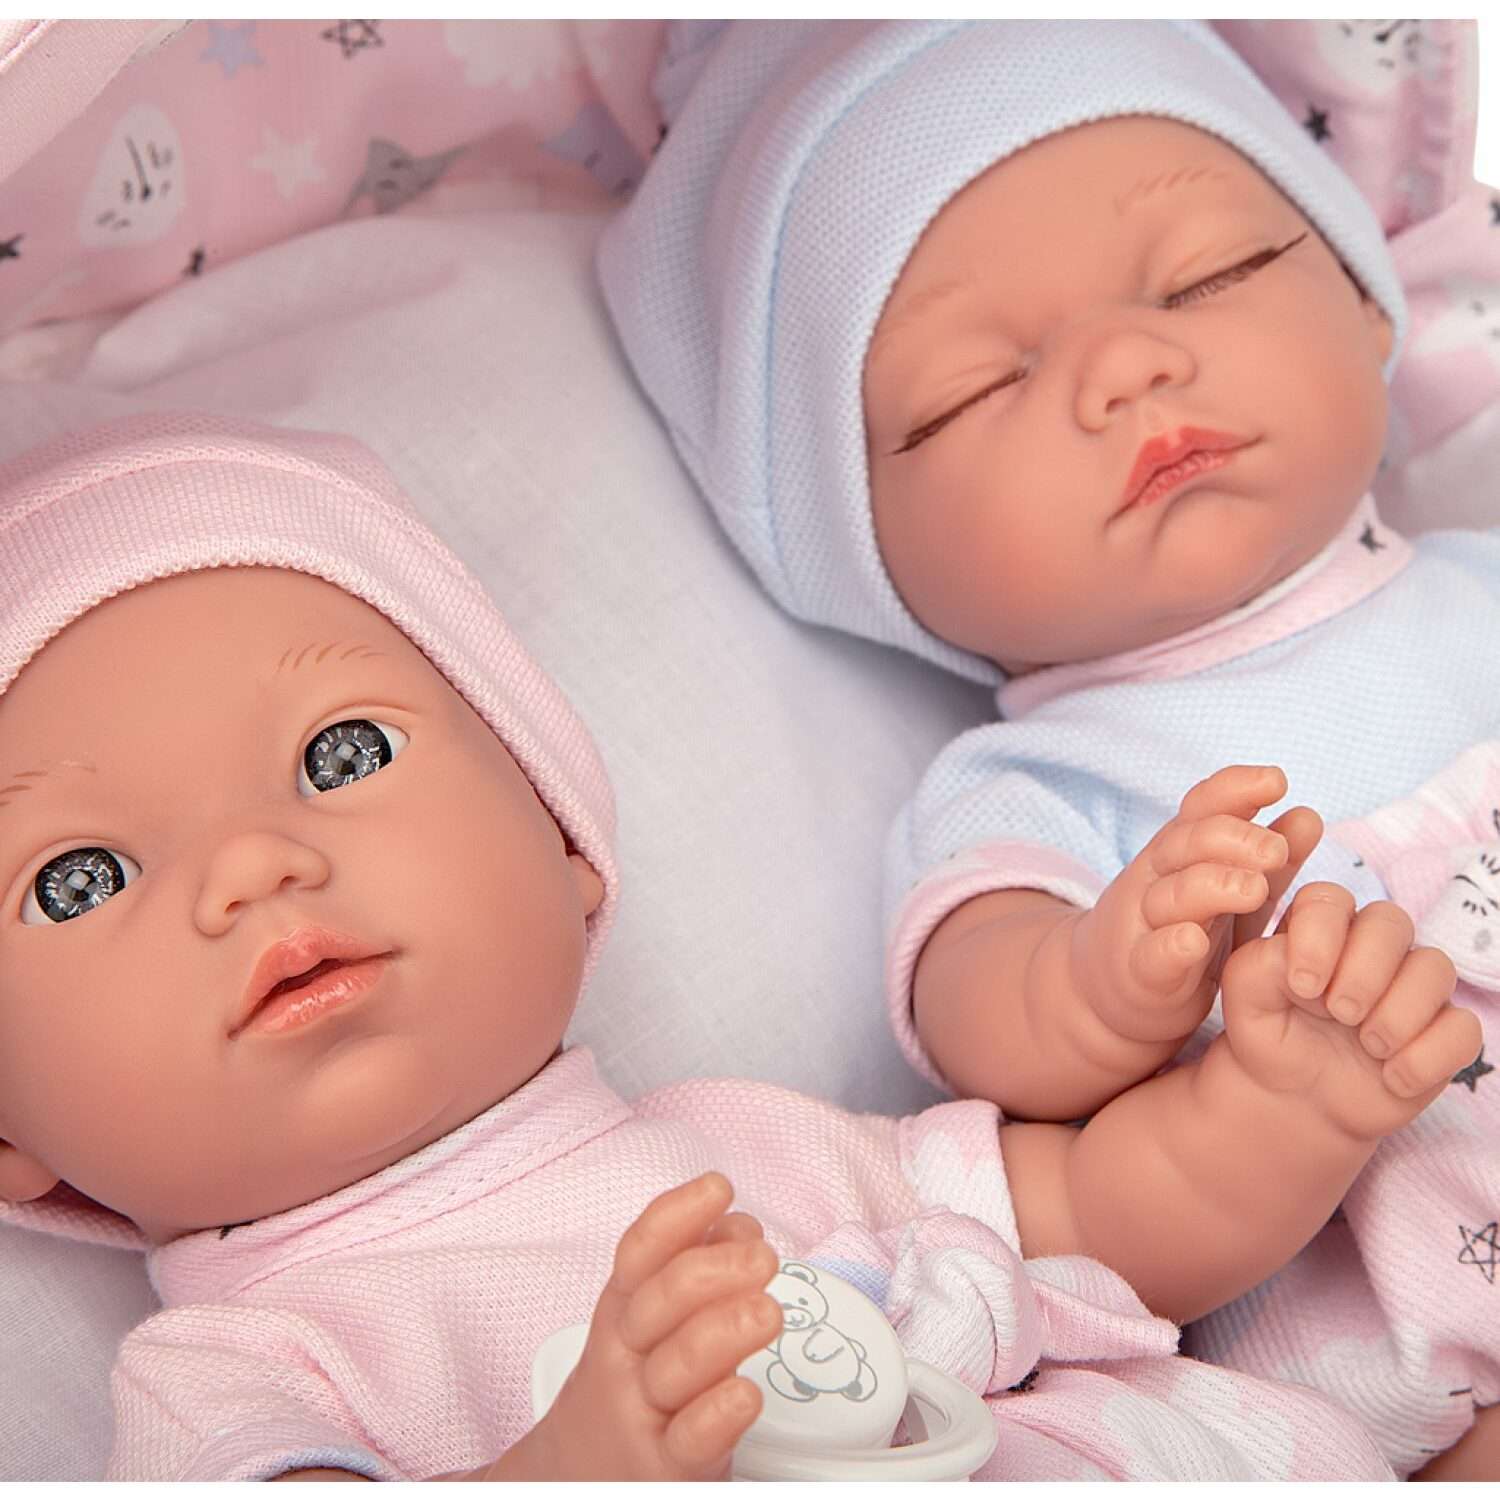 Набор кукол Arias ELEGANCE BABIS GEMELOS реборн двойняшки 26 cм в люльке переноске Т22894 - фото 2